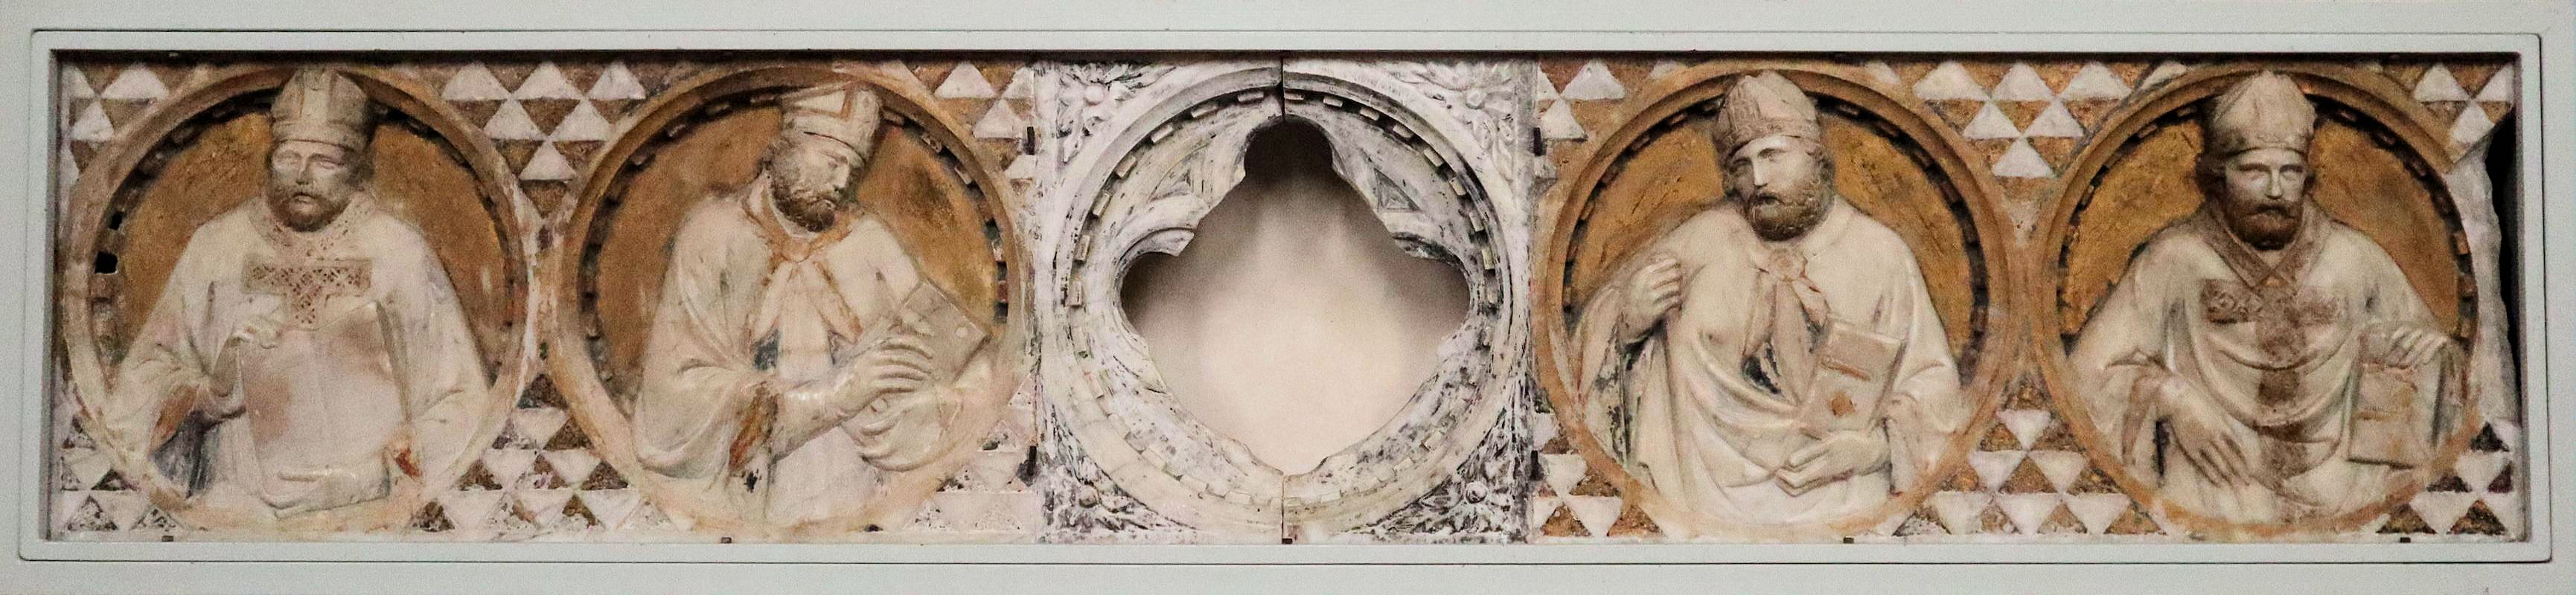 Marmorrelief mit der Darstellung von Bischöfen und dem Durchguck, durch den man Bartholomäus' Reliquien betrachten konnte, ursprünglich am Sarkophag von Bartholomäus, 1317/1318, in der Kirche Sant'Agostino in San Gimignano